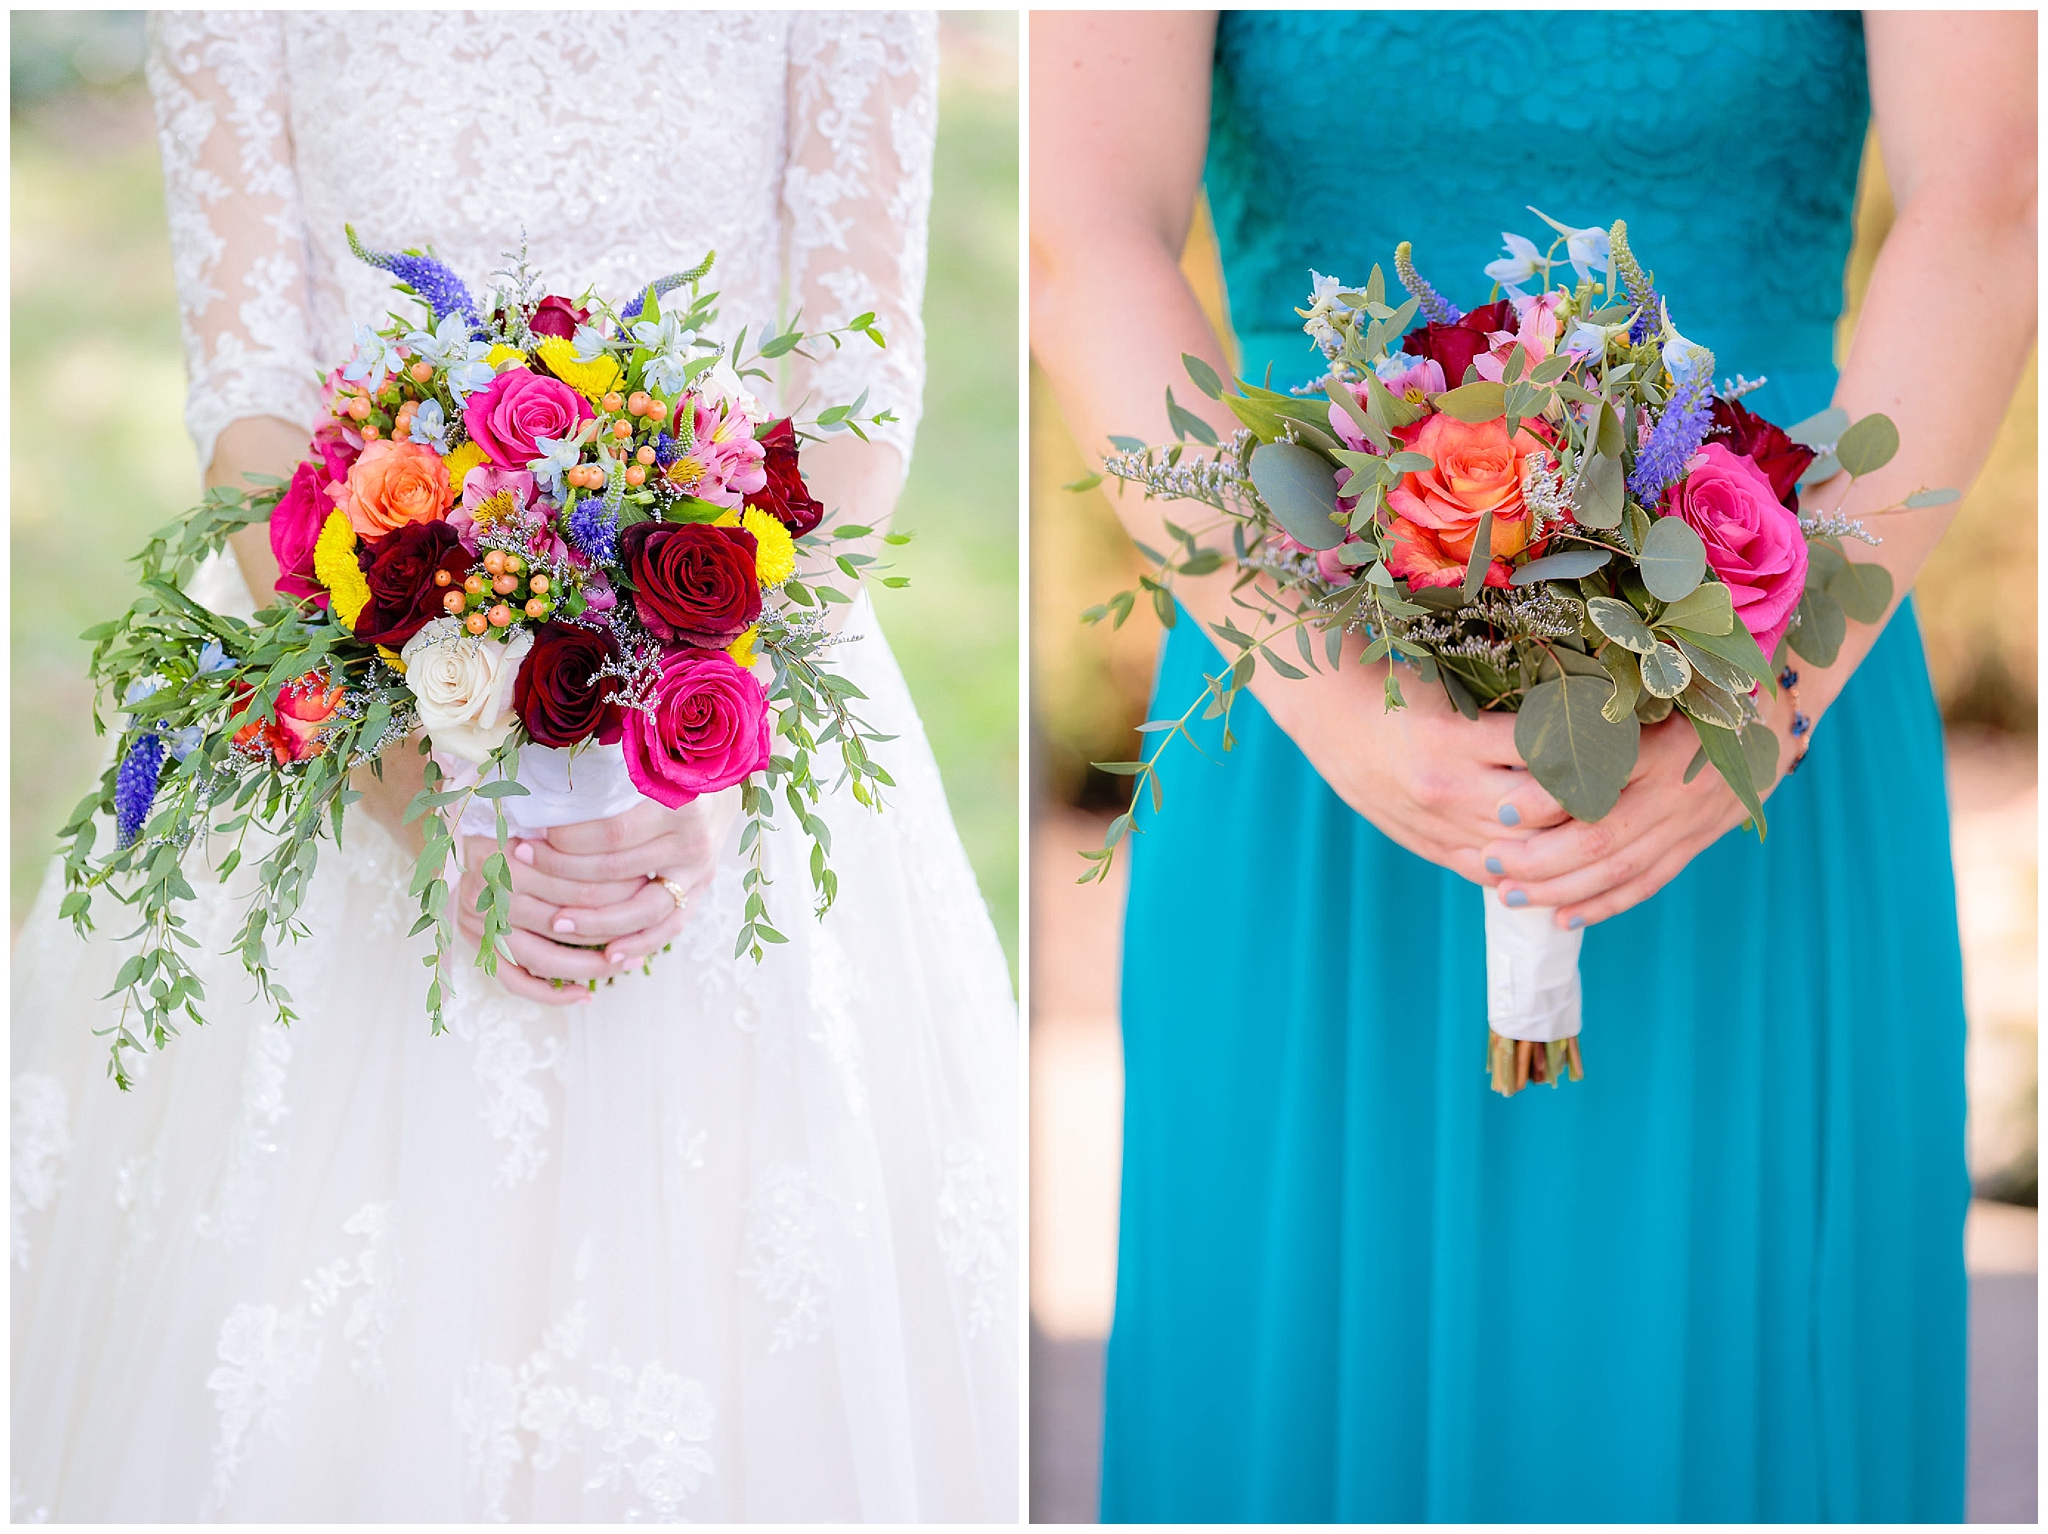 Colorful bouquets by Patti's Petals Flower Shop against bride & bridesmaid's dresses